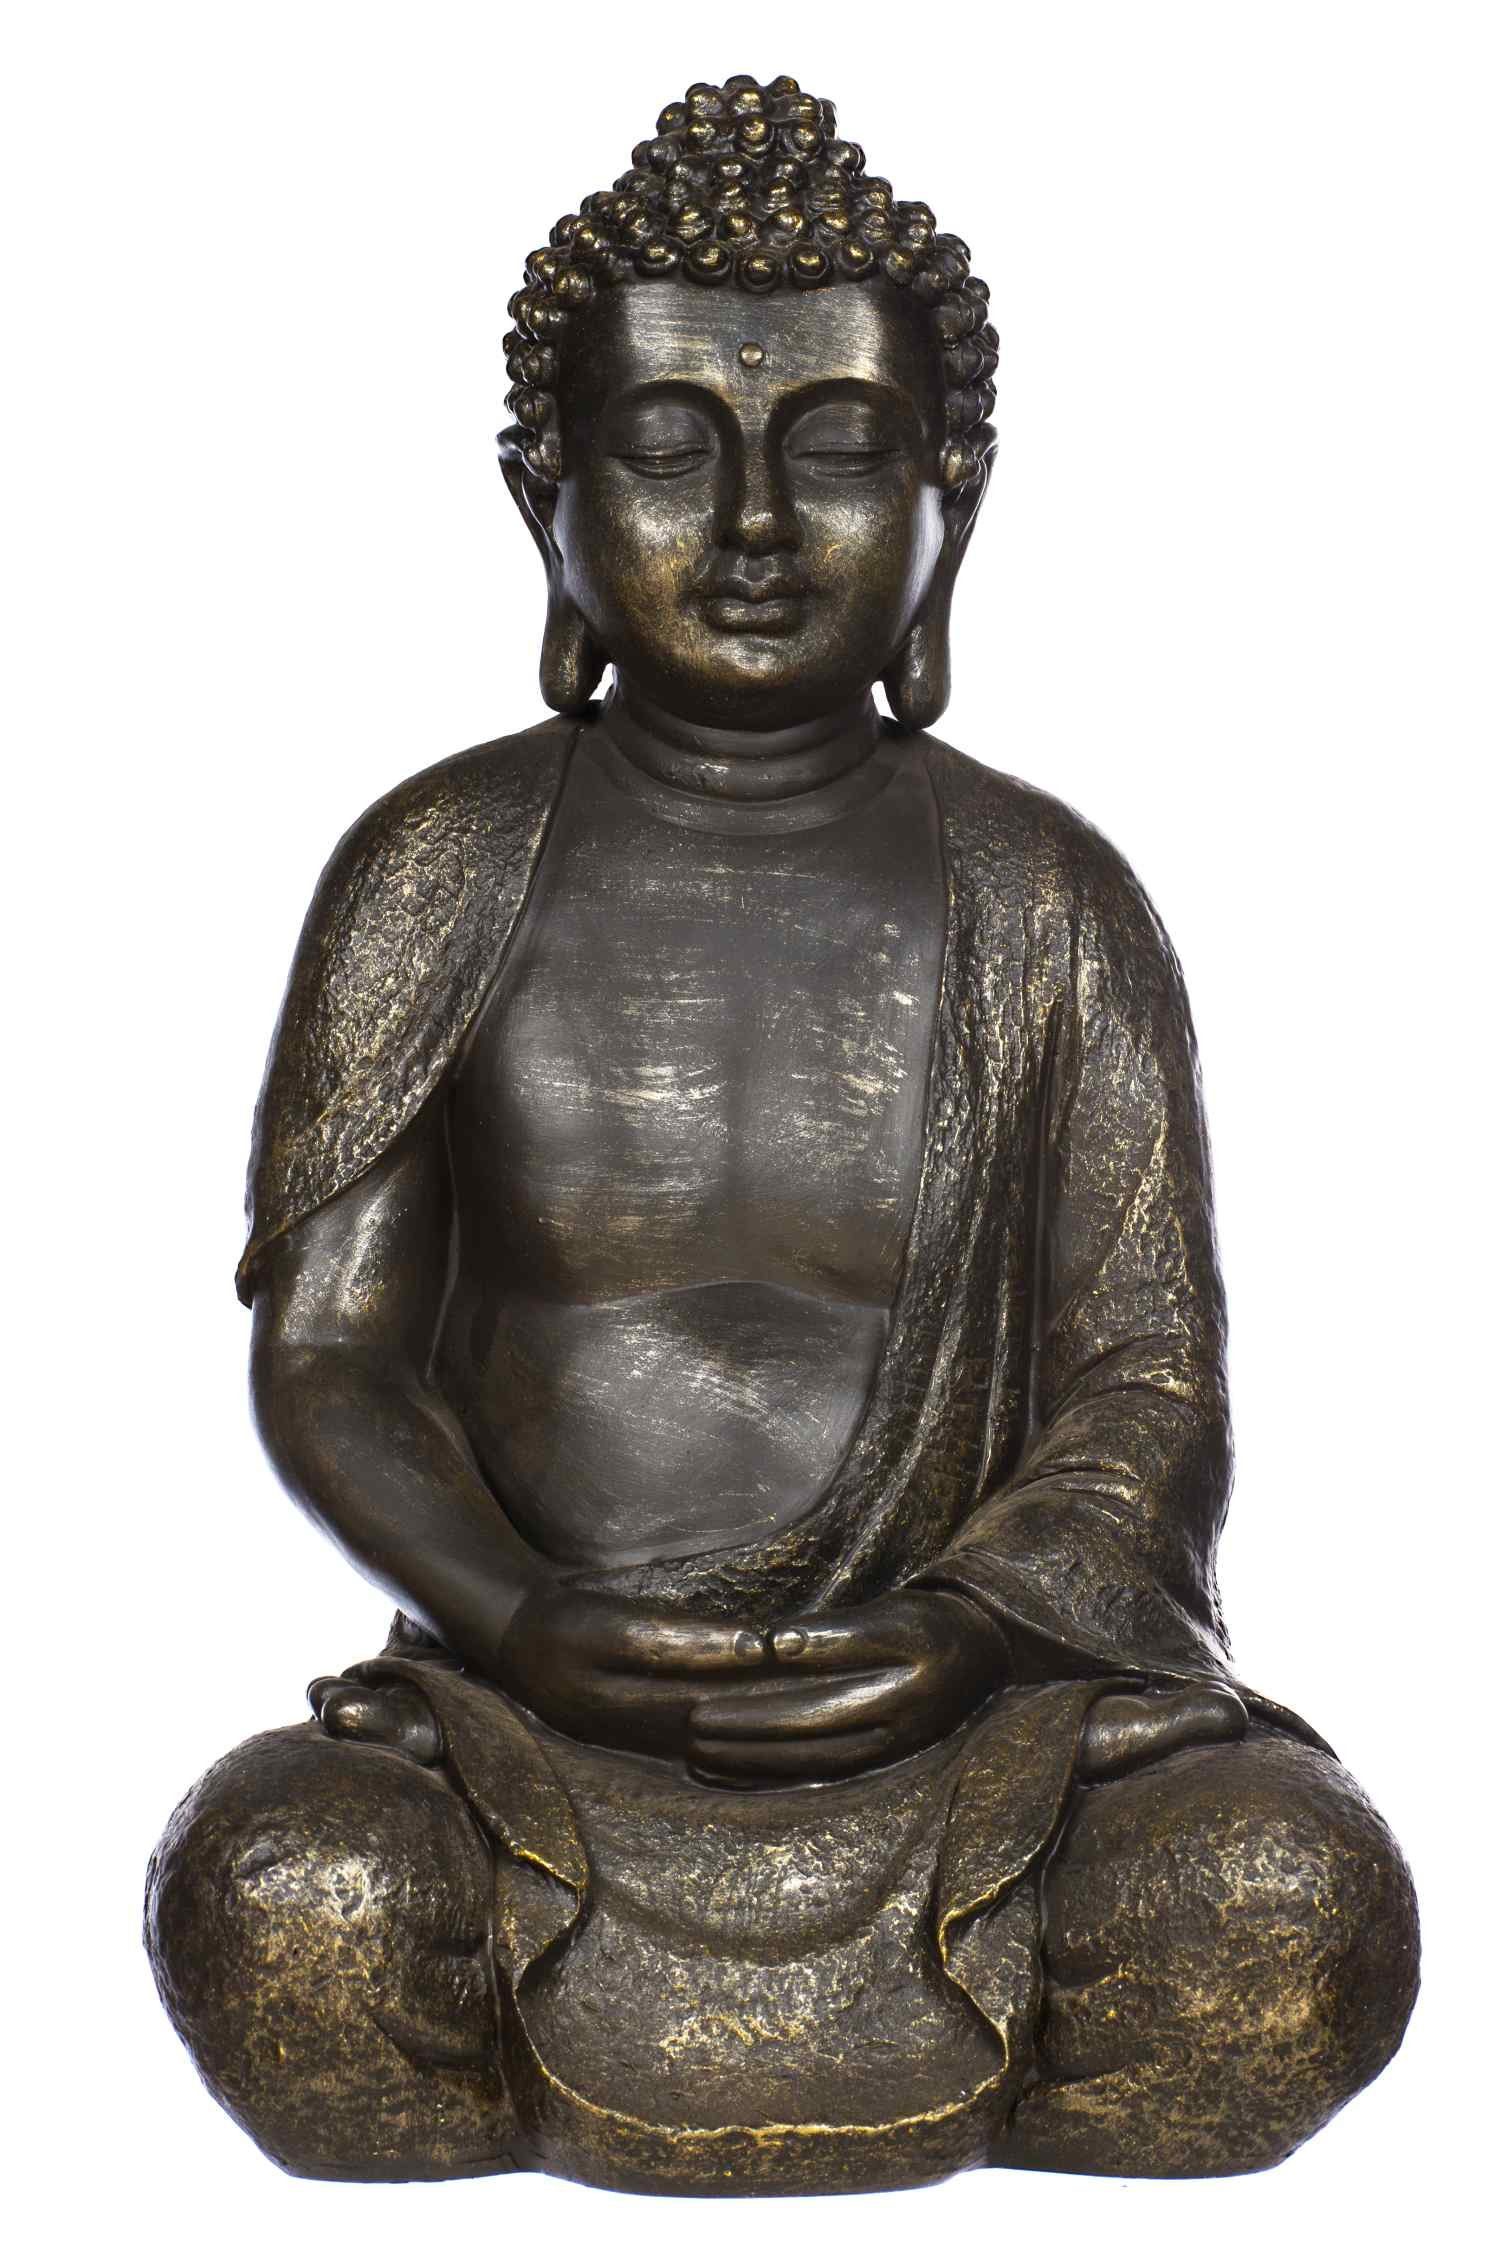 BIRENDY Buddhafigur Buddha NF13106 Bronze Figur XL44cm hoch Statue groß Büste feine Strukturen